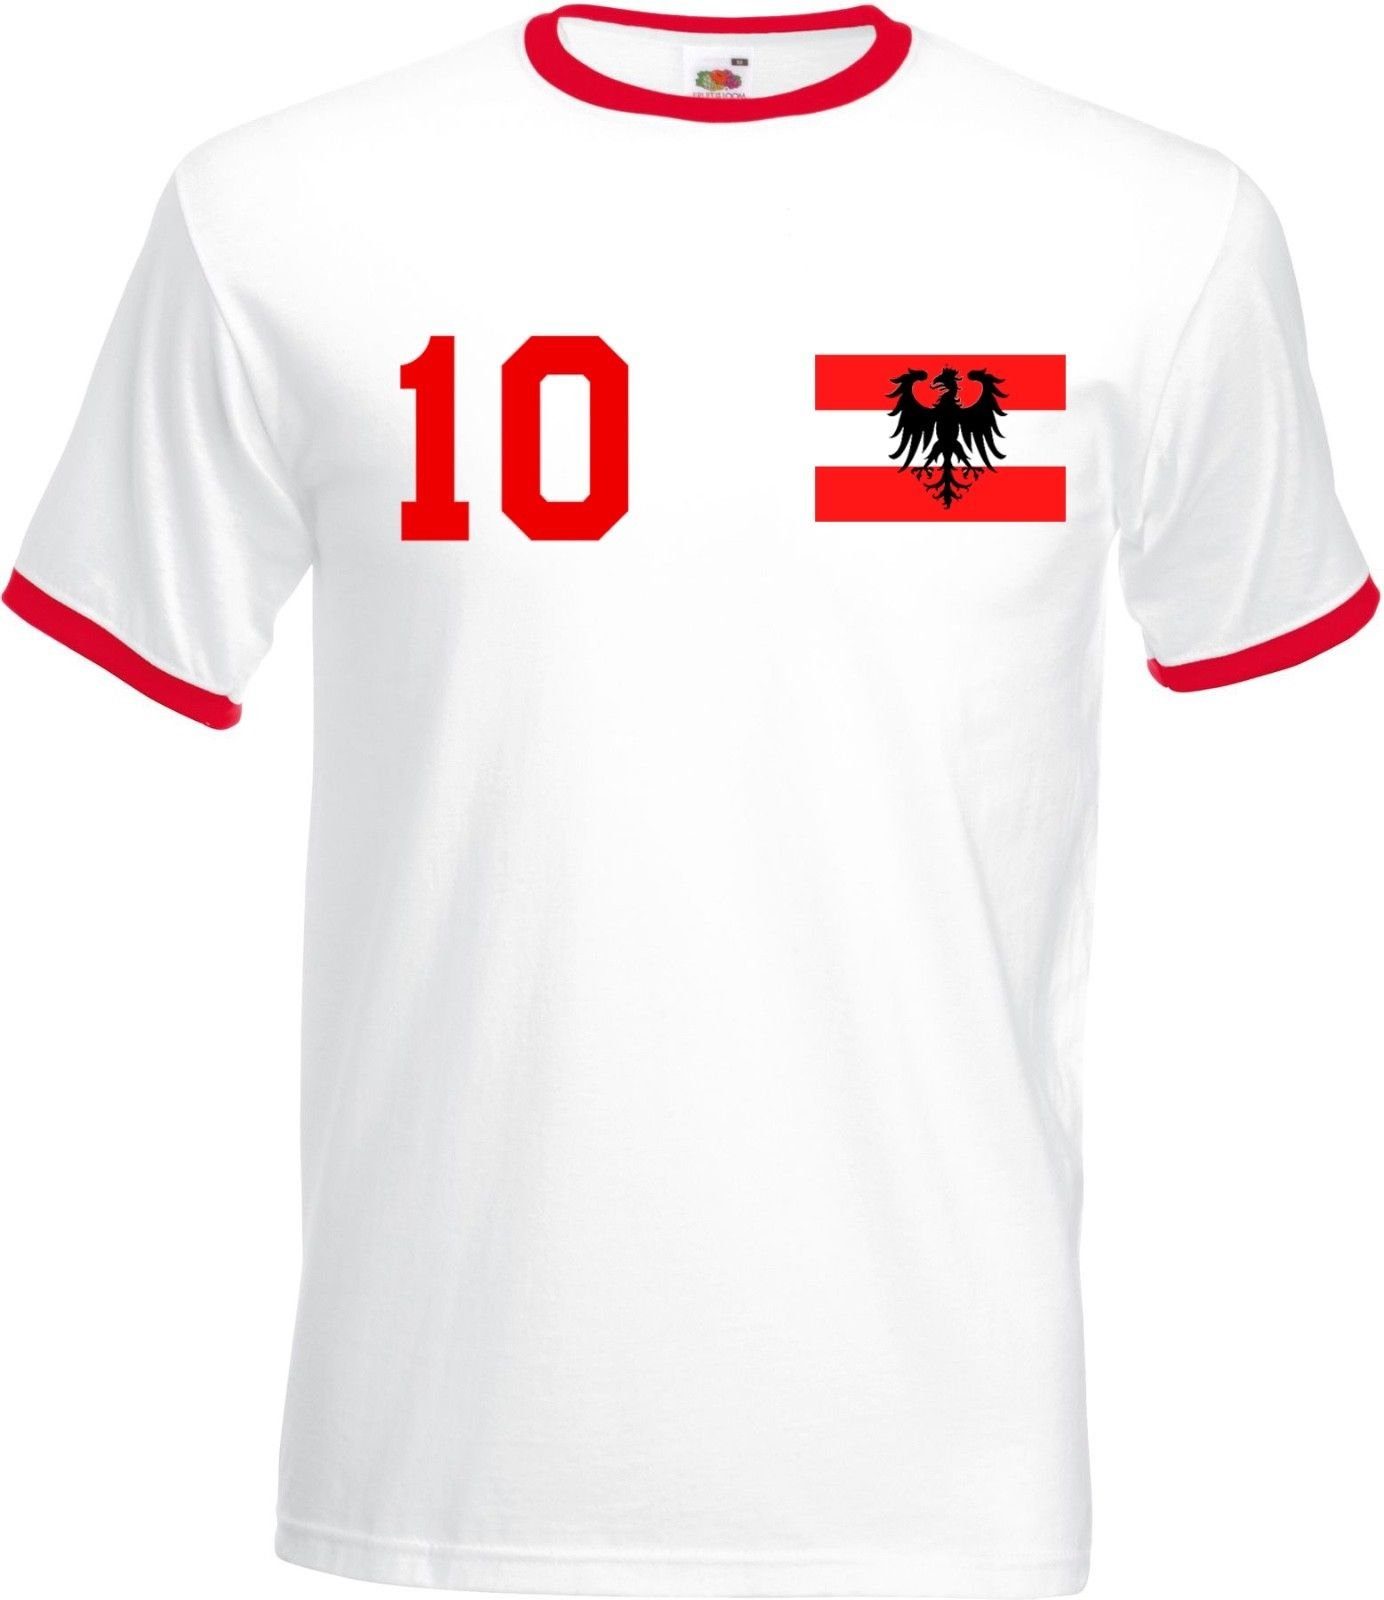 T-Shirt Designz Youth im T-Shirt Motiv Look Fußball Österreich mit trendigem Herren Trikot